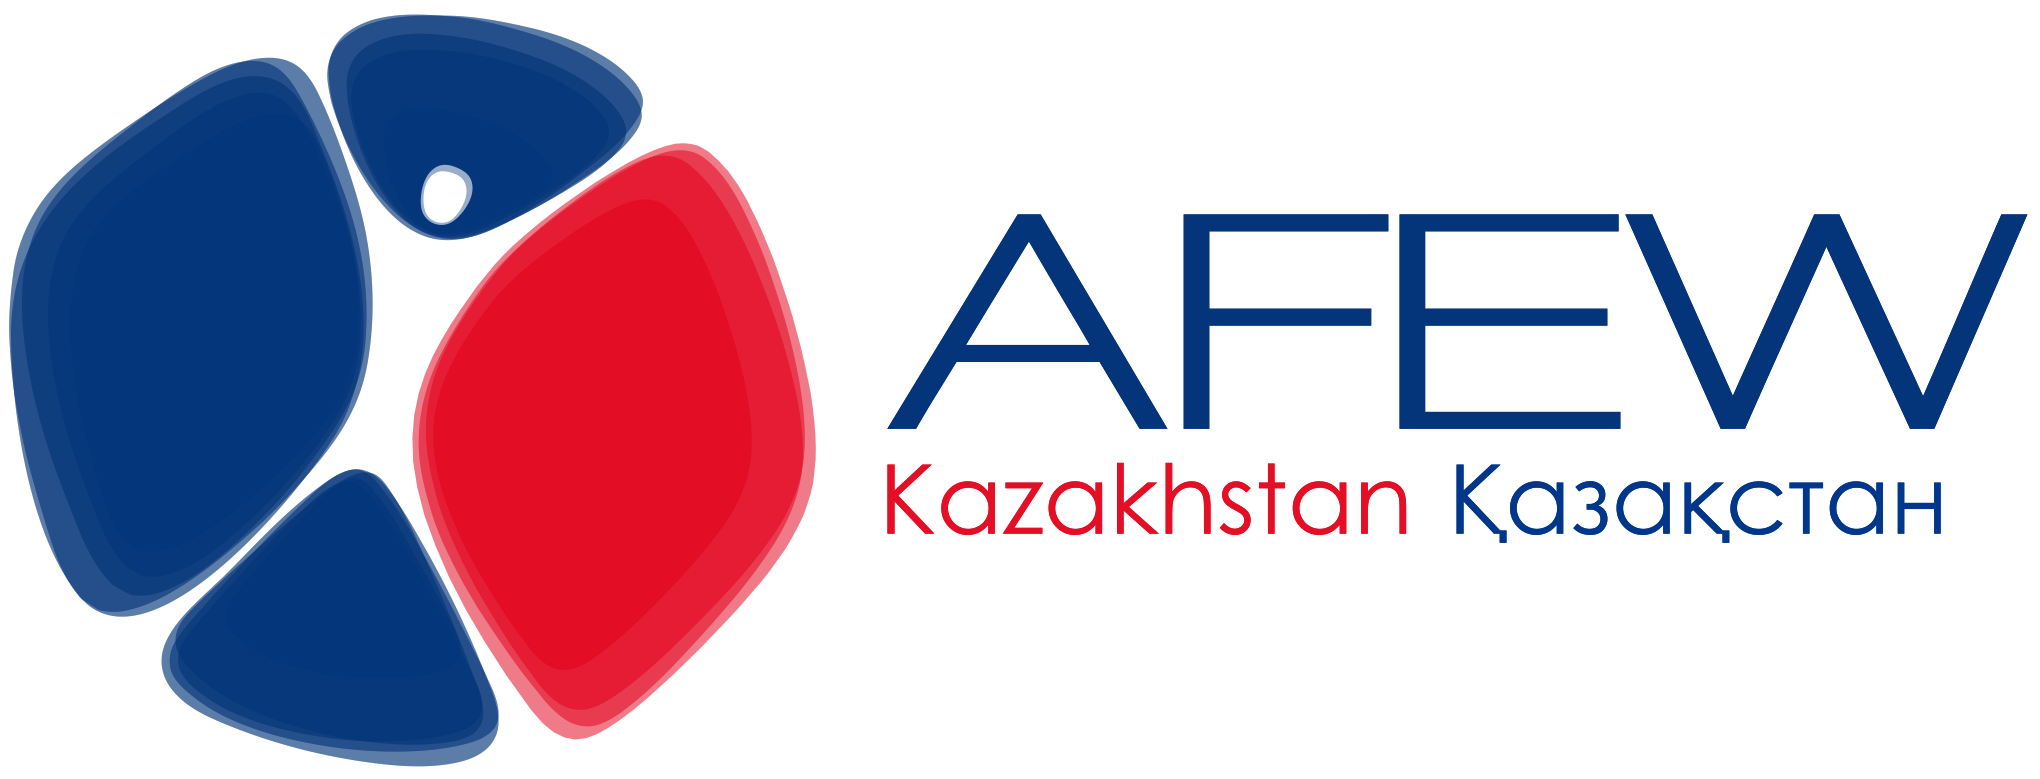 AFEW Kazakhstan